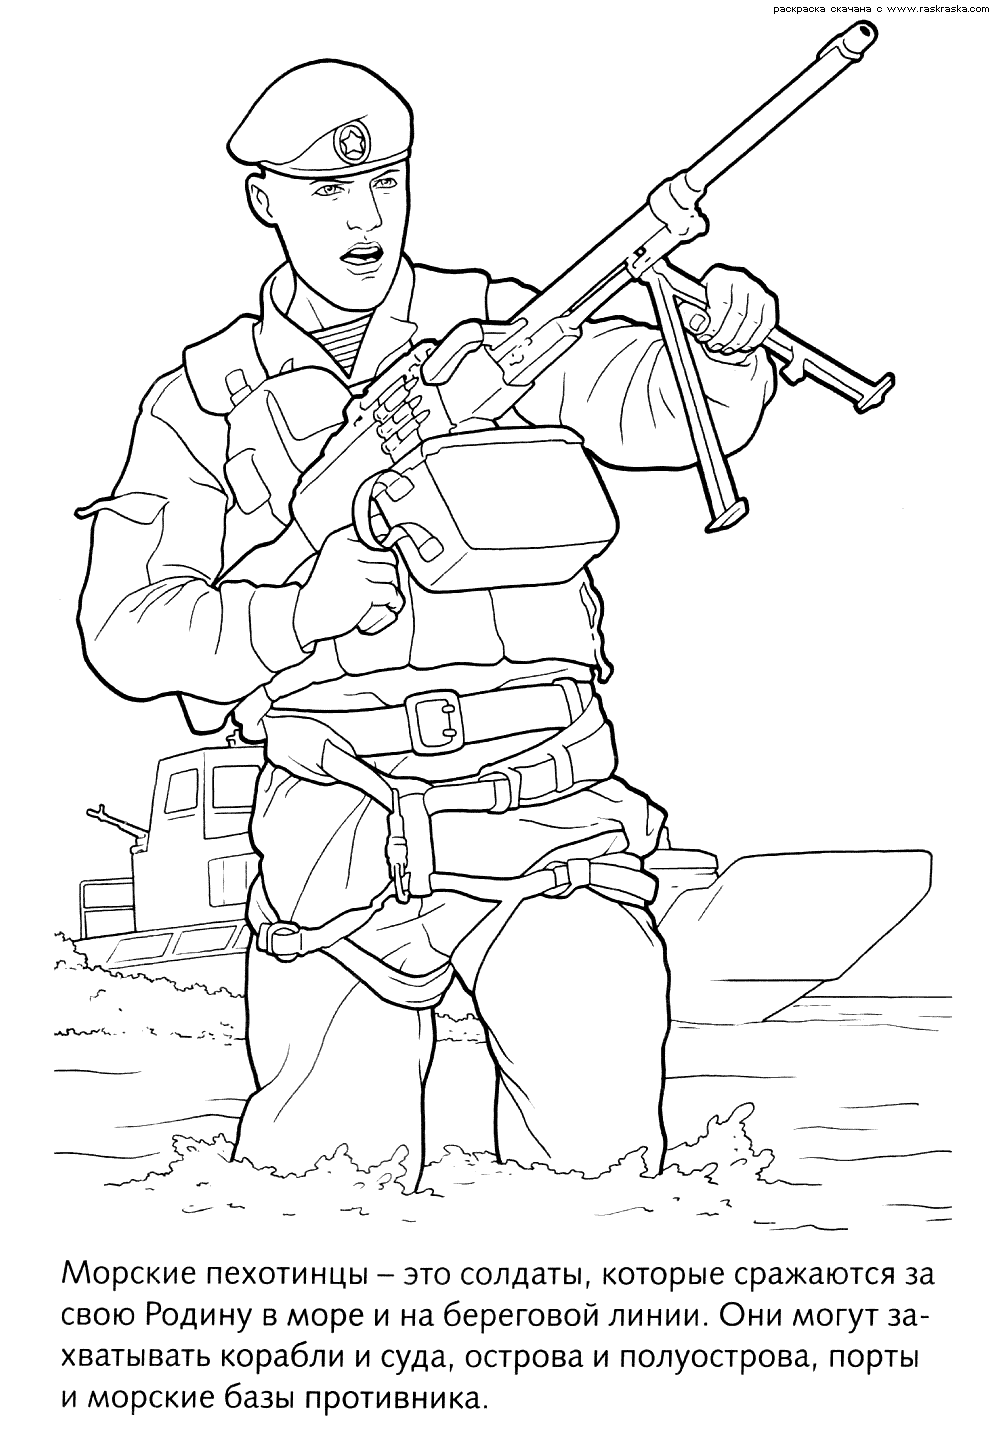 Схема рисования солдата